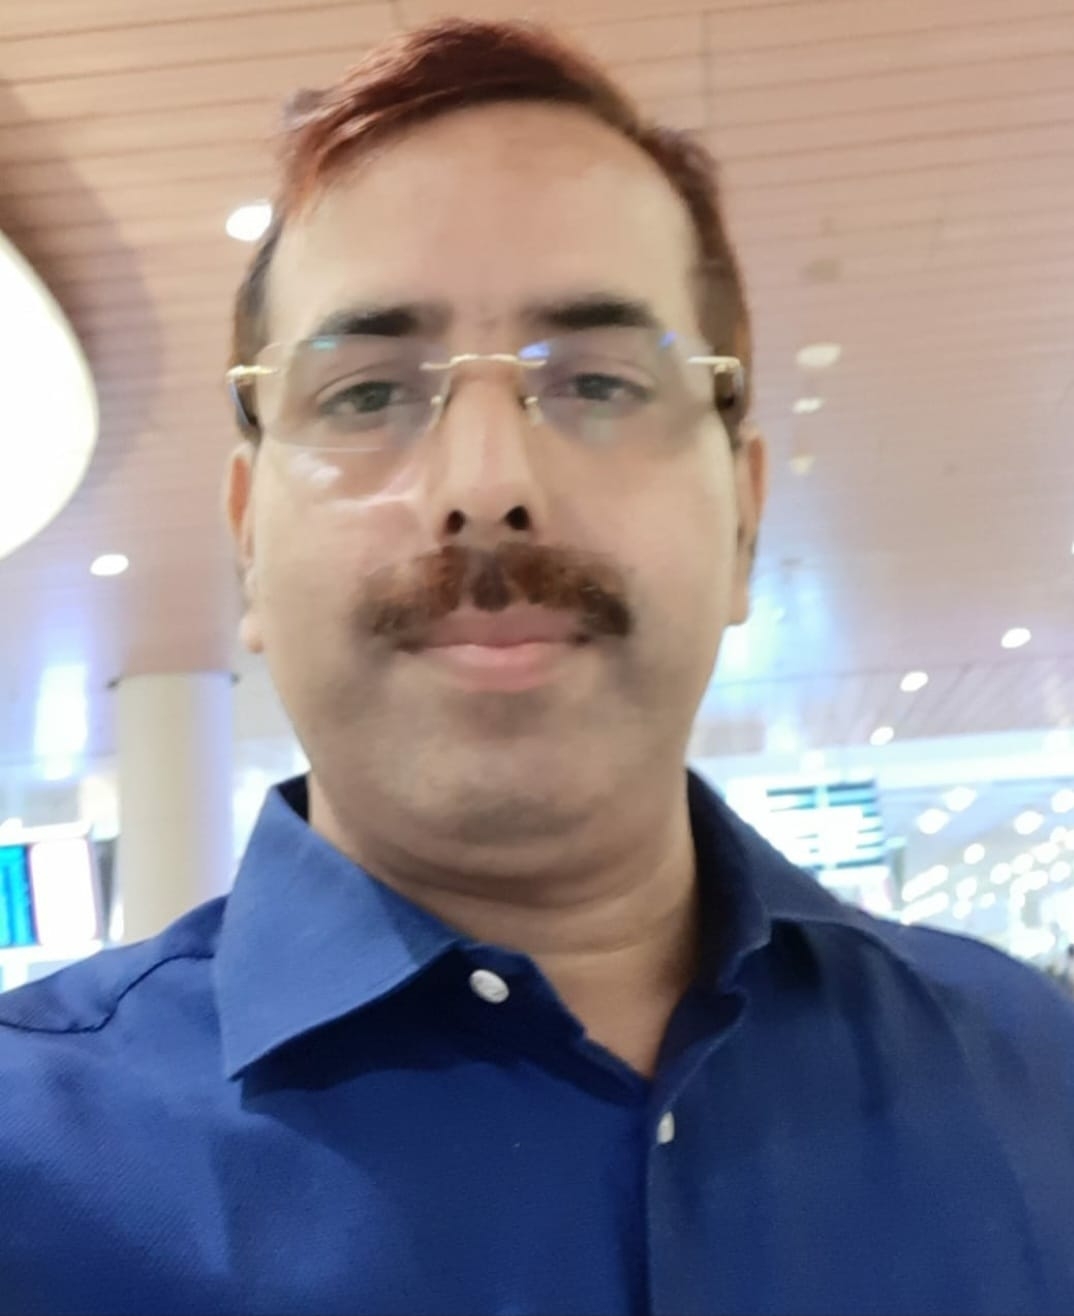 Dr. Arun Singh